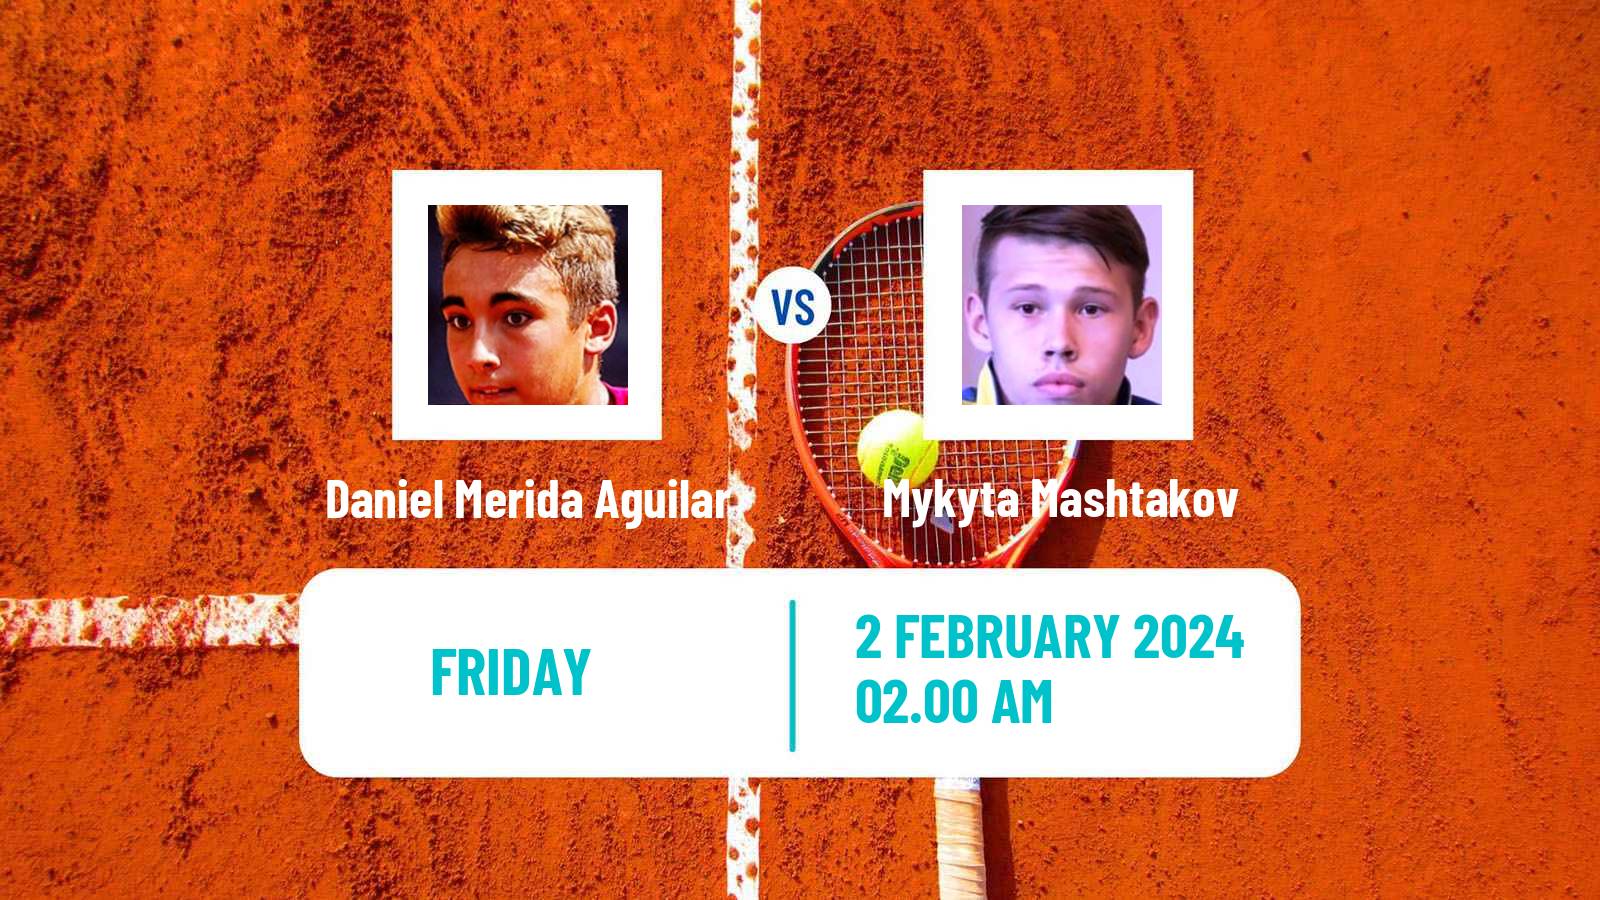 Tennis ITF M25 Antalya Men Daniel Merida Aguilar - Mykyta Mashtakov